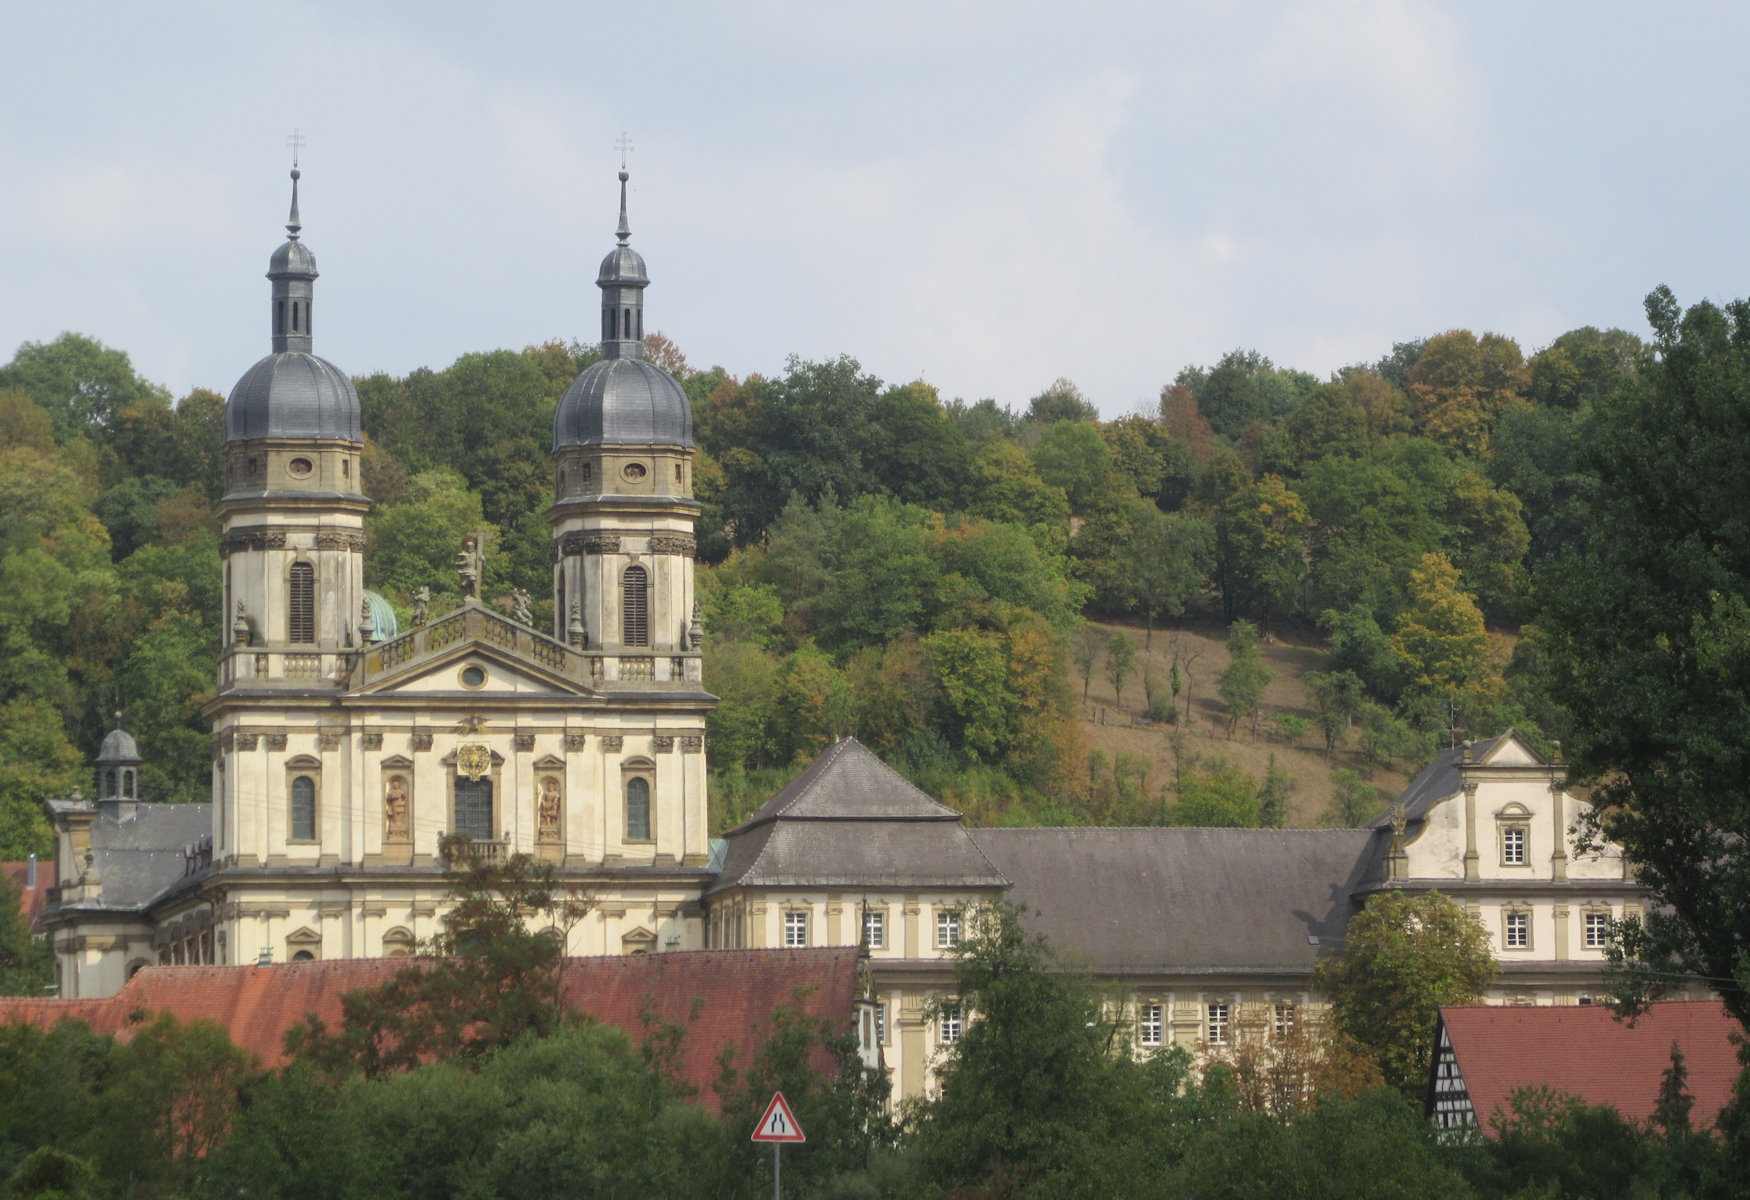 ehemaliges Kloster der Zisterzienser in Schöntal, 1157 gegründet, 1802 säkularisiert, 1810 bis 1975 Evang. Seminar